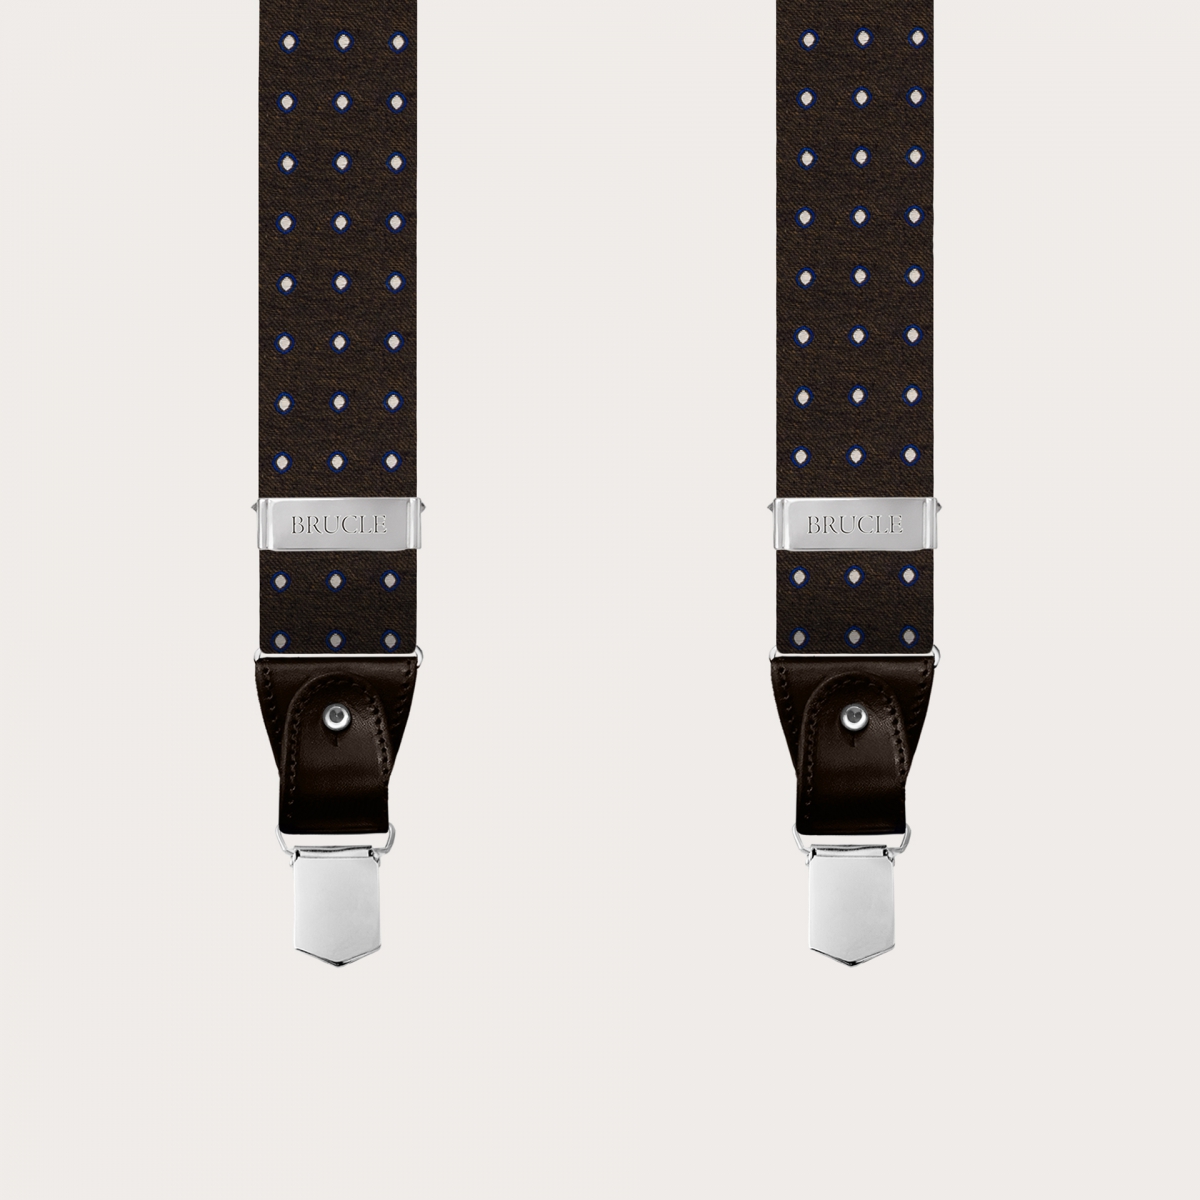 BRUCLE Men's suspenders in brown silk with polka dot pattern